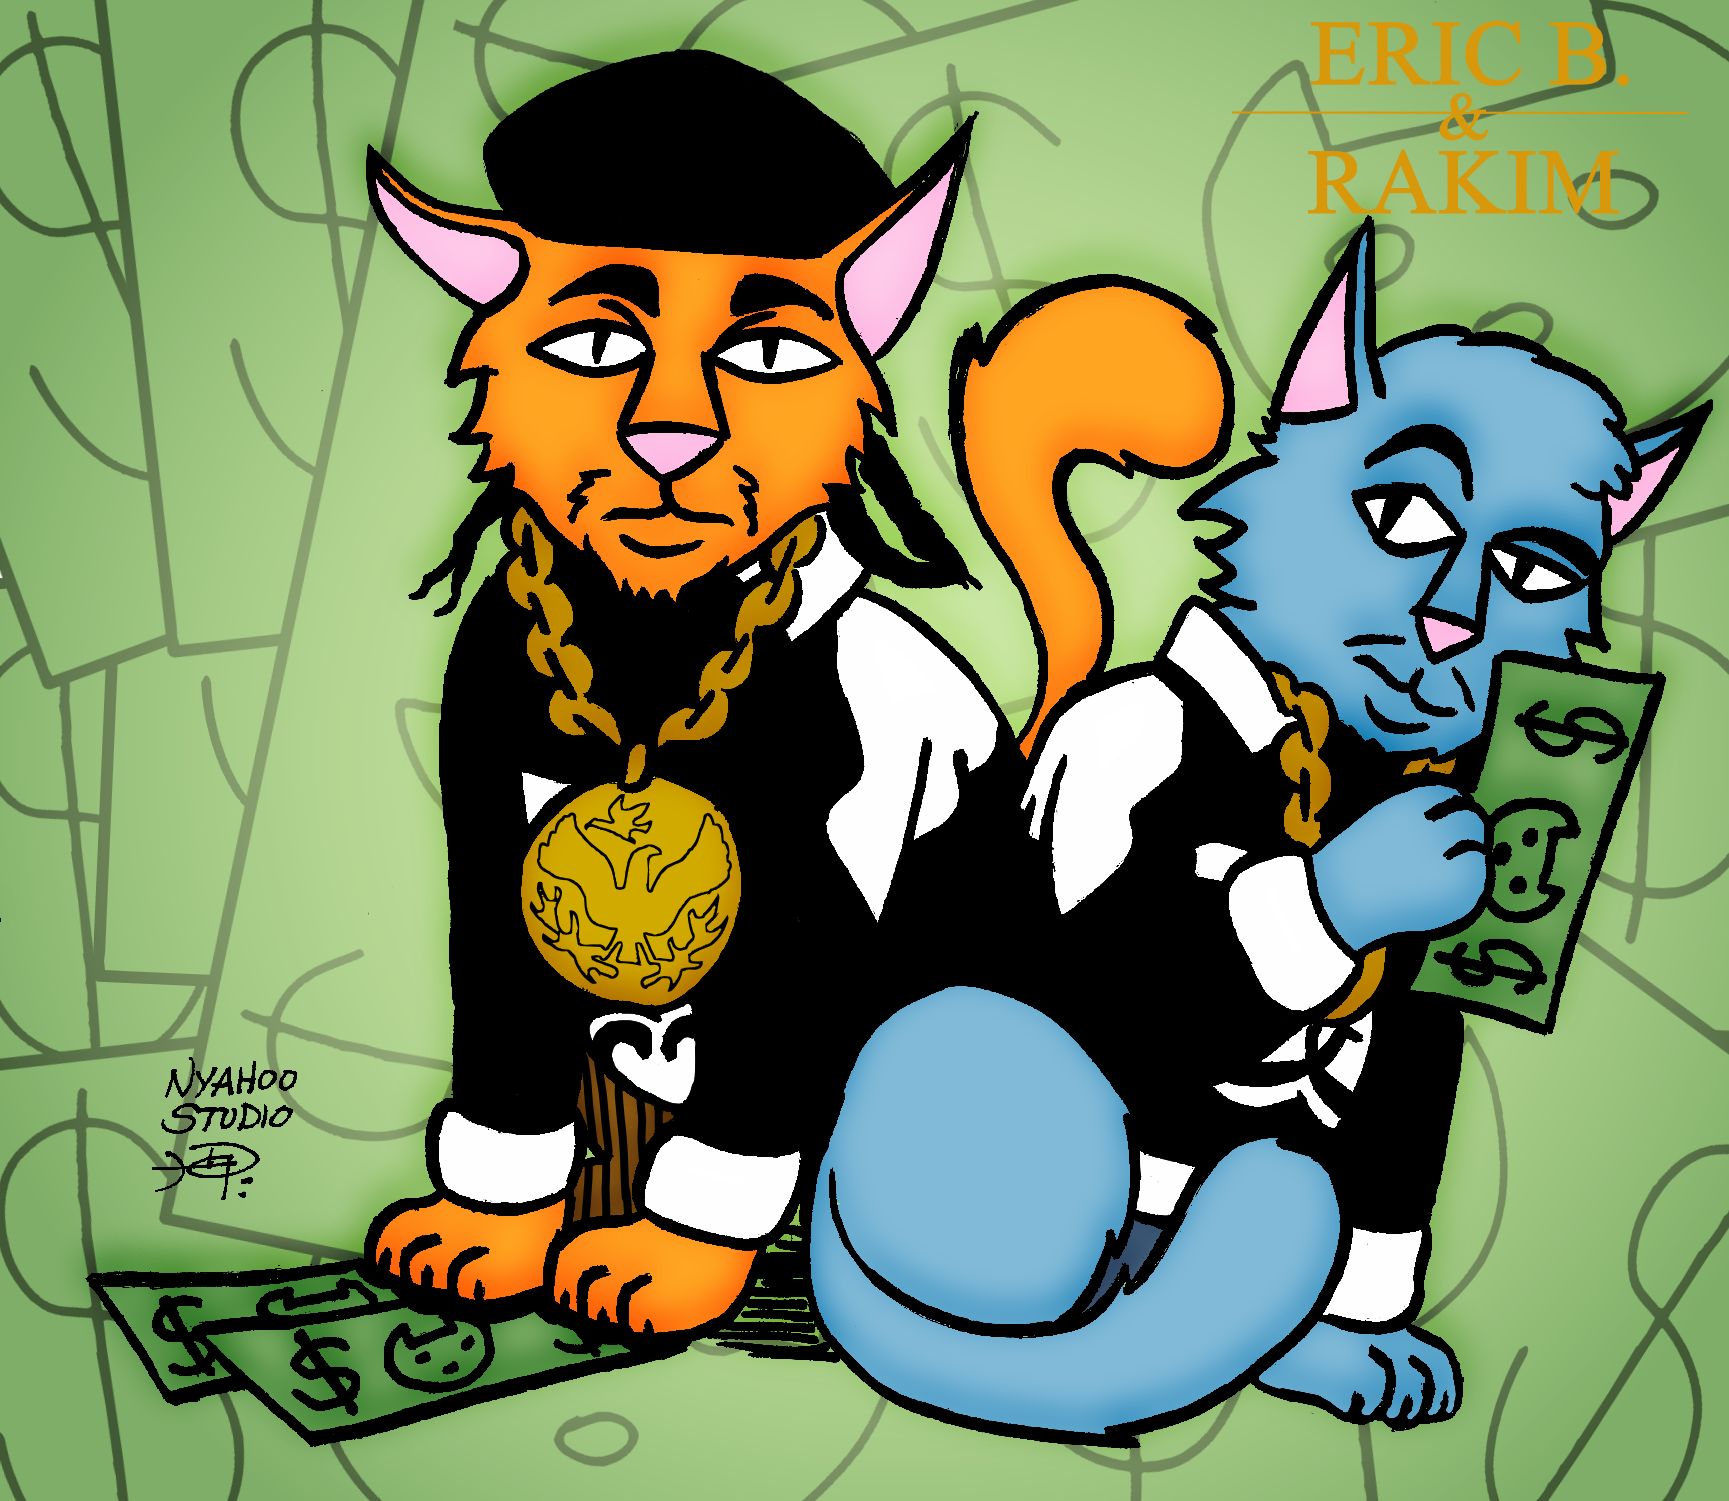 Eric B and Rakim as Cat